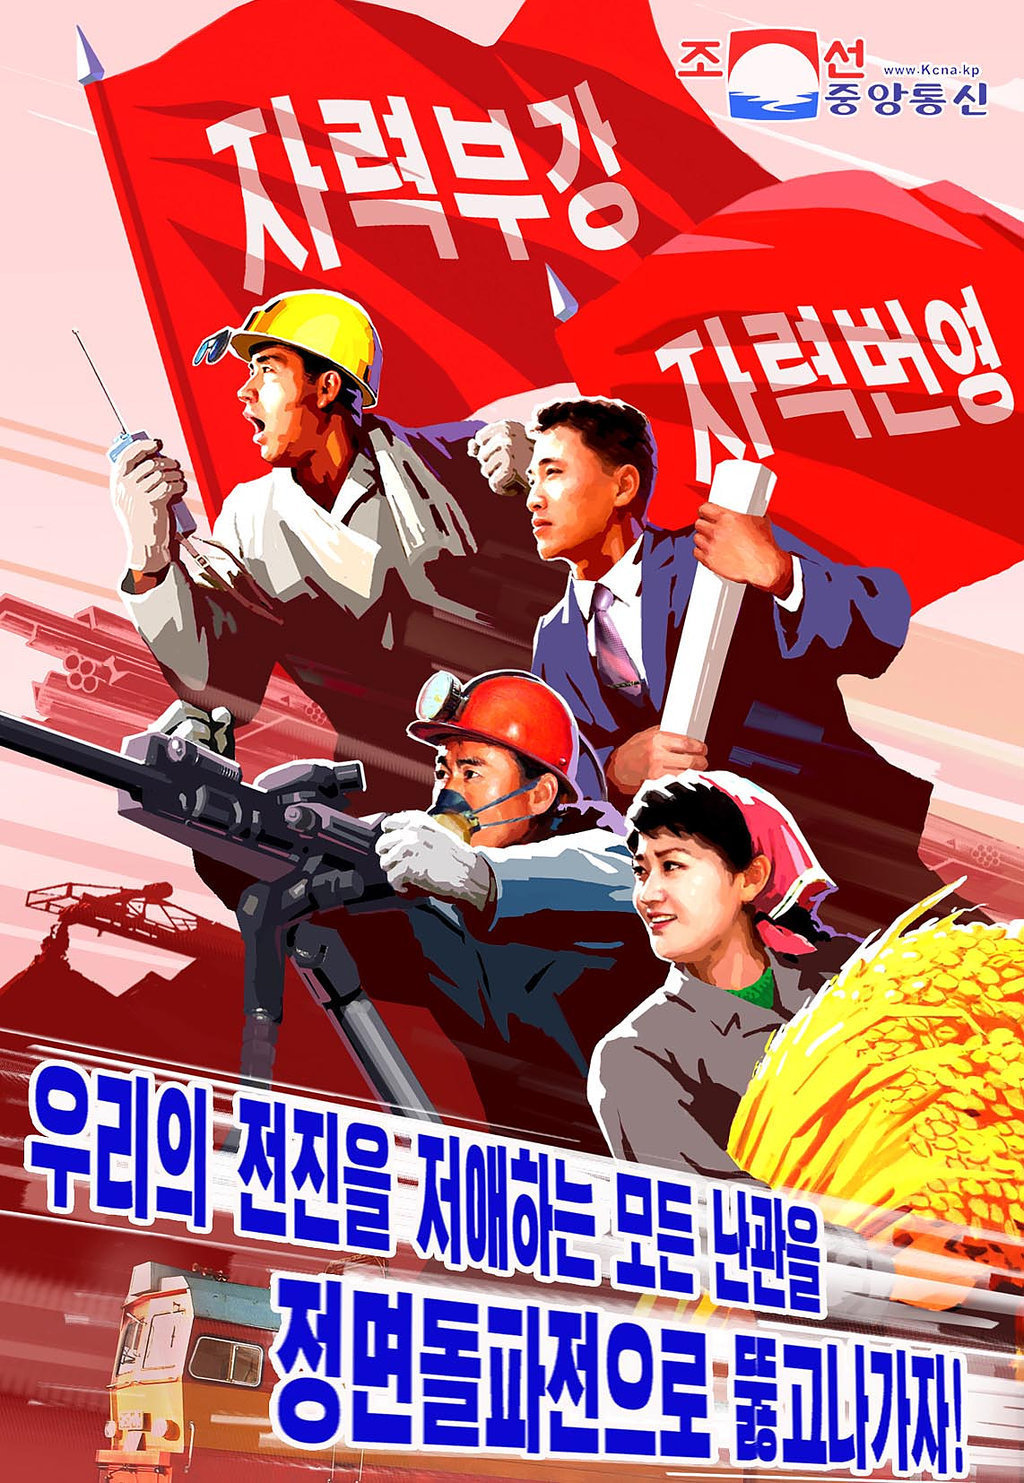 2020 년 1 월 22 일 북한 중앙 통신이 공개 한이 사진은 오늘 초 북한 집권 노동당 제 7 차 중앙위원회 제 5 차 본회의에서 확인 된 중요한 과제를 강조한 새로운 선전 포스터 중 하나를 보여준다.  공공의.  이 포스터에는 